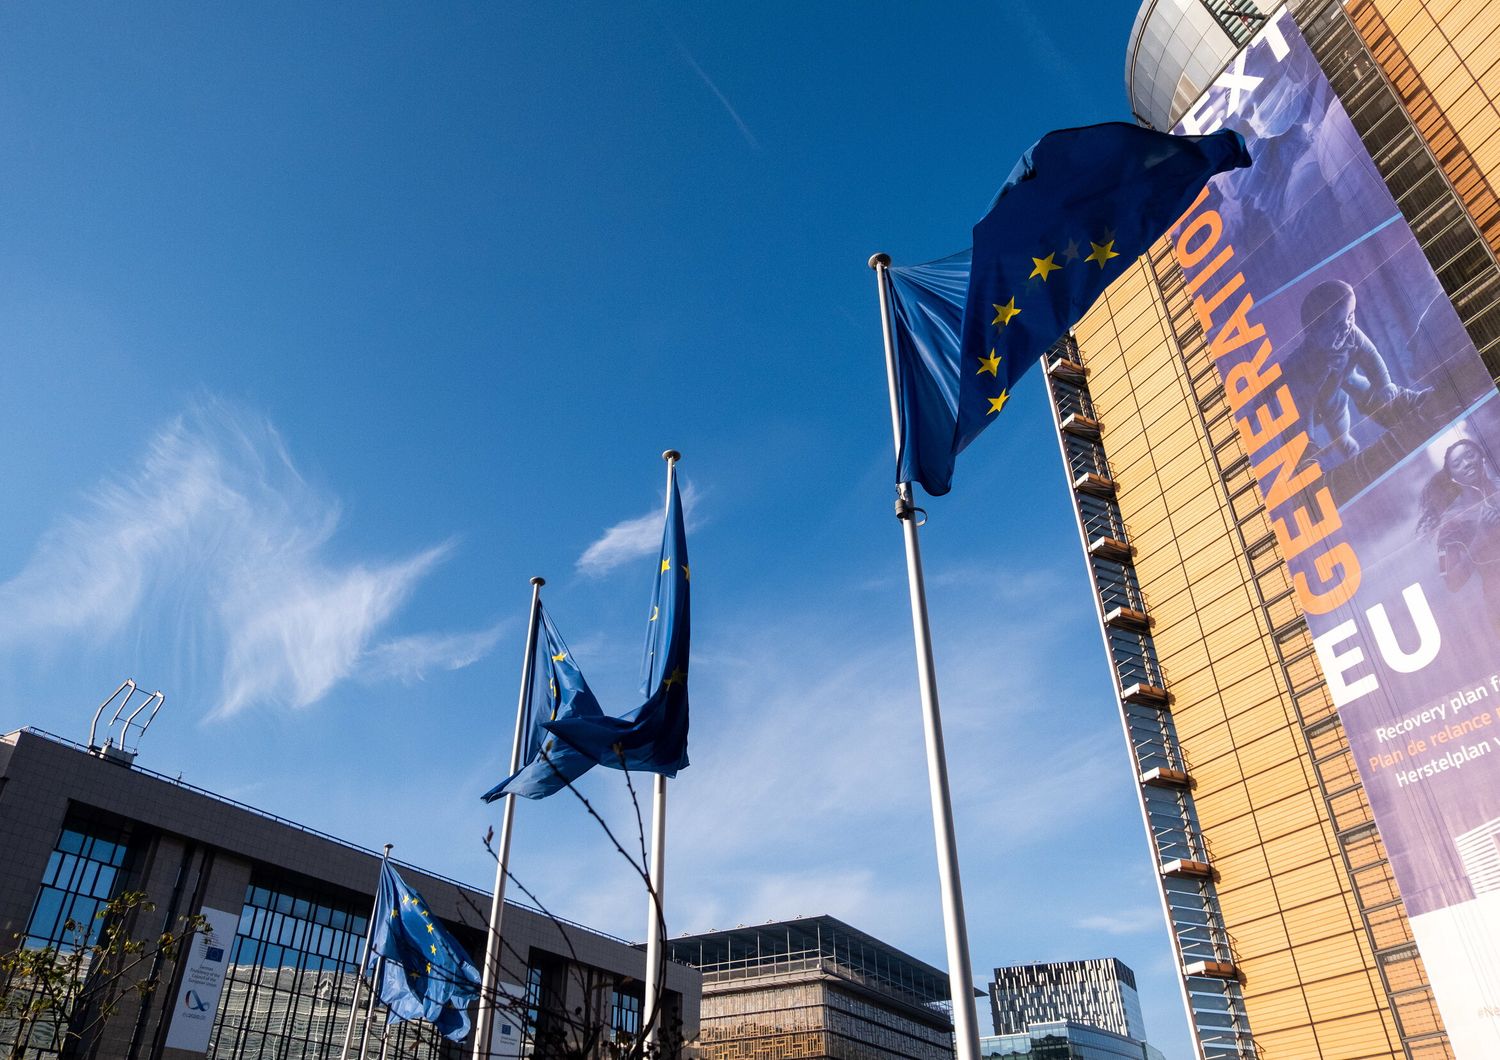 Il quartier generale della Commissione europea con lo striscione di Next Generation Ue